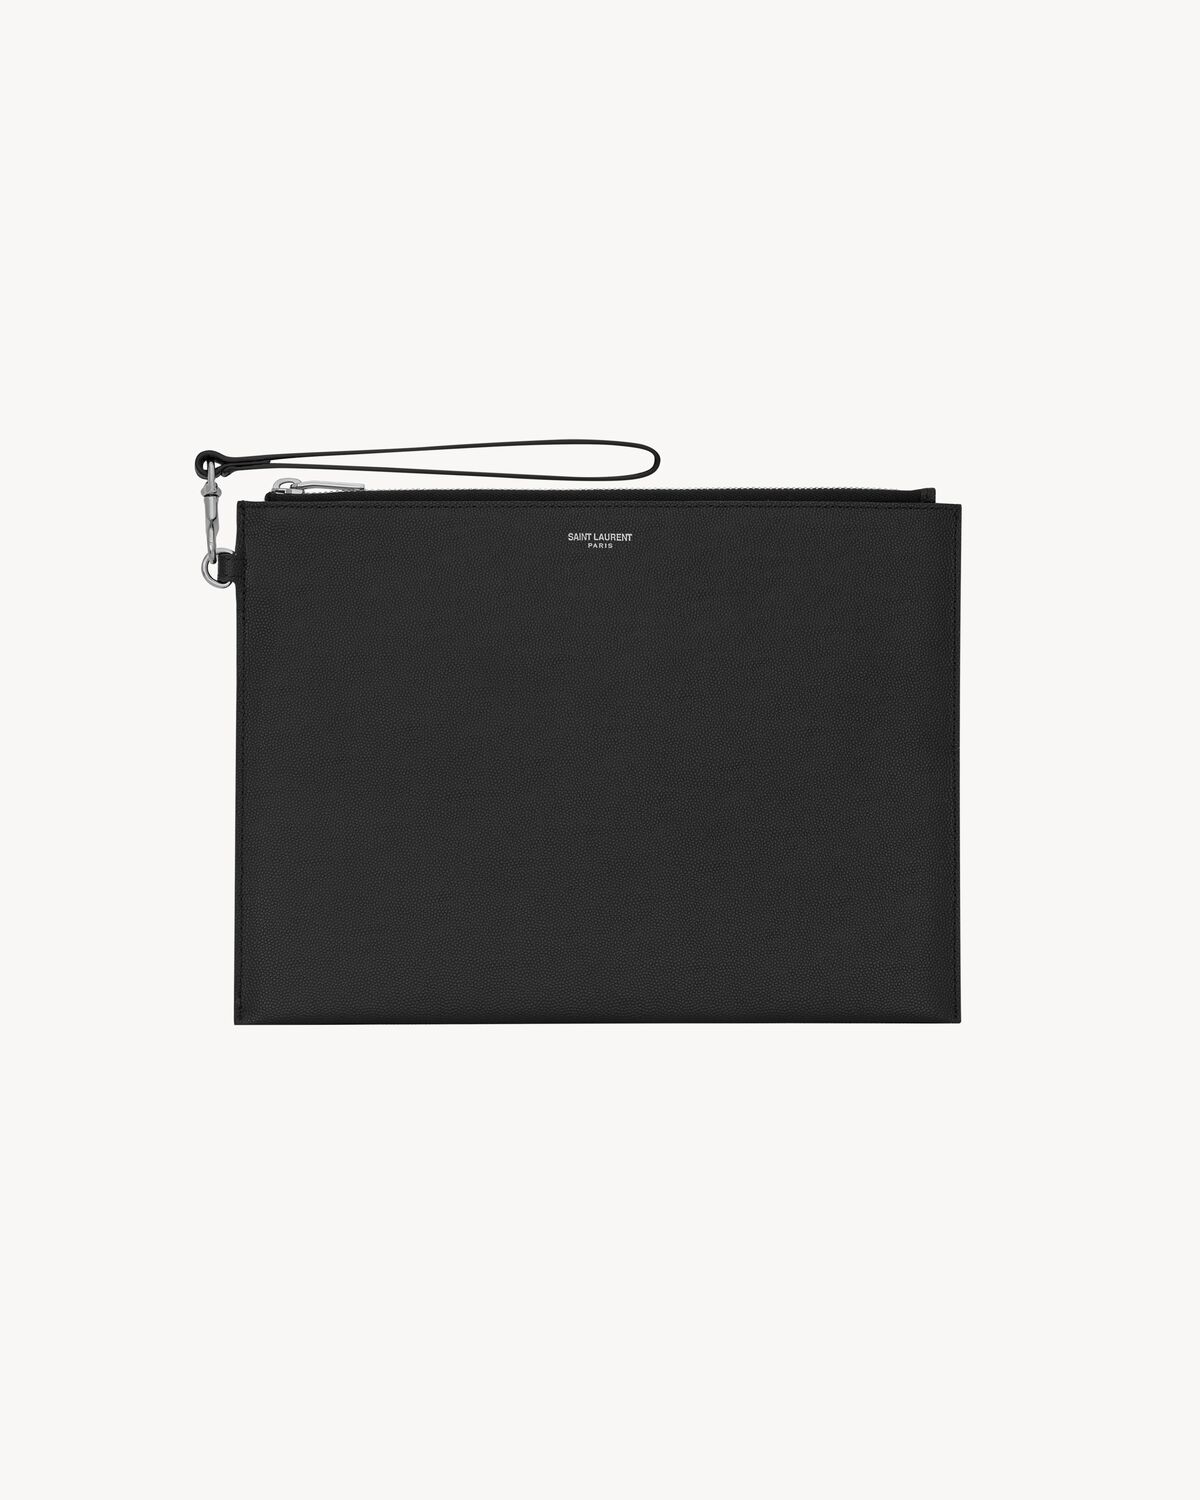 Saint Laurent Paris zipped tablet holder in grain de poudre-leather